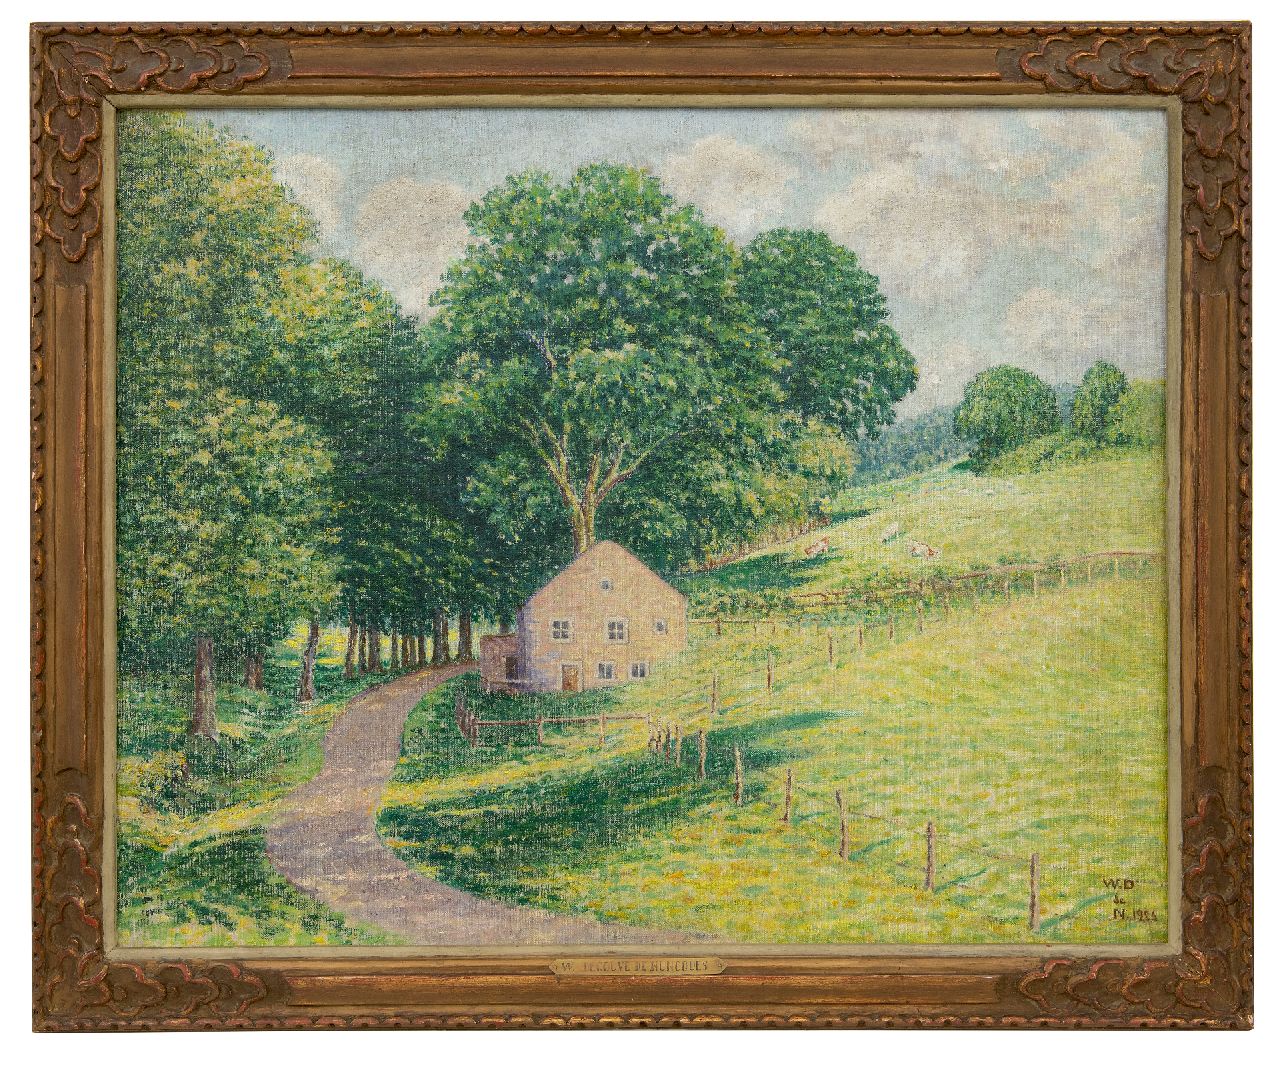 Degouve de Nuncques W.  | William Degouve de Nuncques | Schilderijen te koop aangeboden | Landschap met boerderij in de Ardennen, olieverf op doek 63,9 x 80,8 cm, gesigneerd rechtsonder met monogram en gedateerd 1926